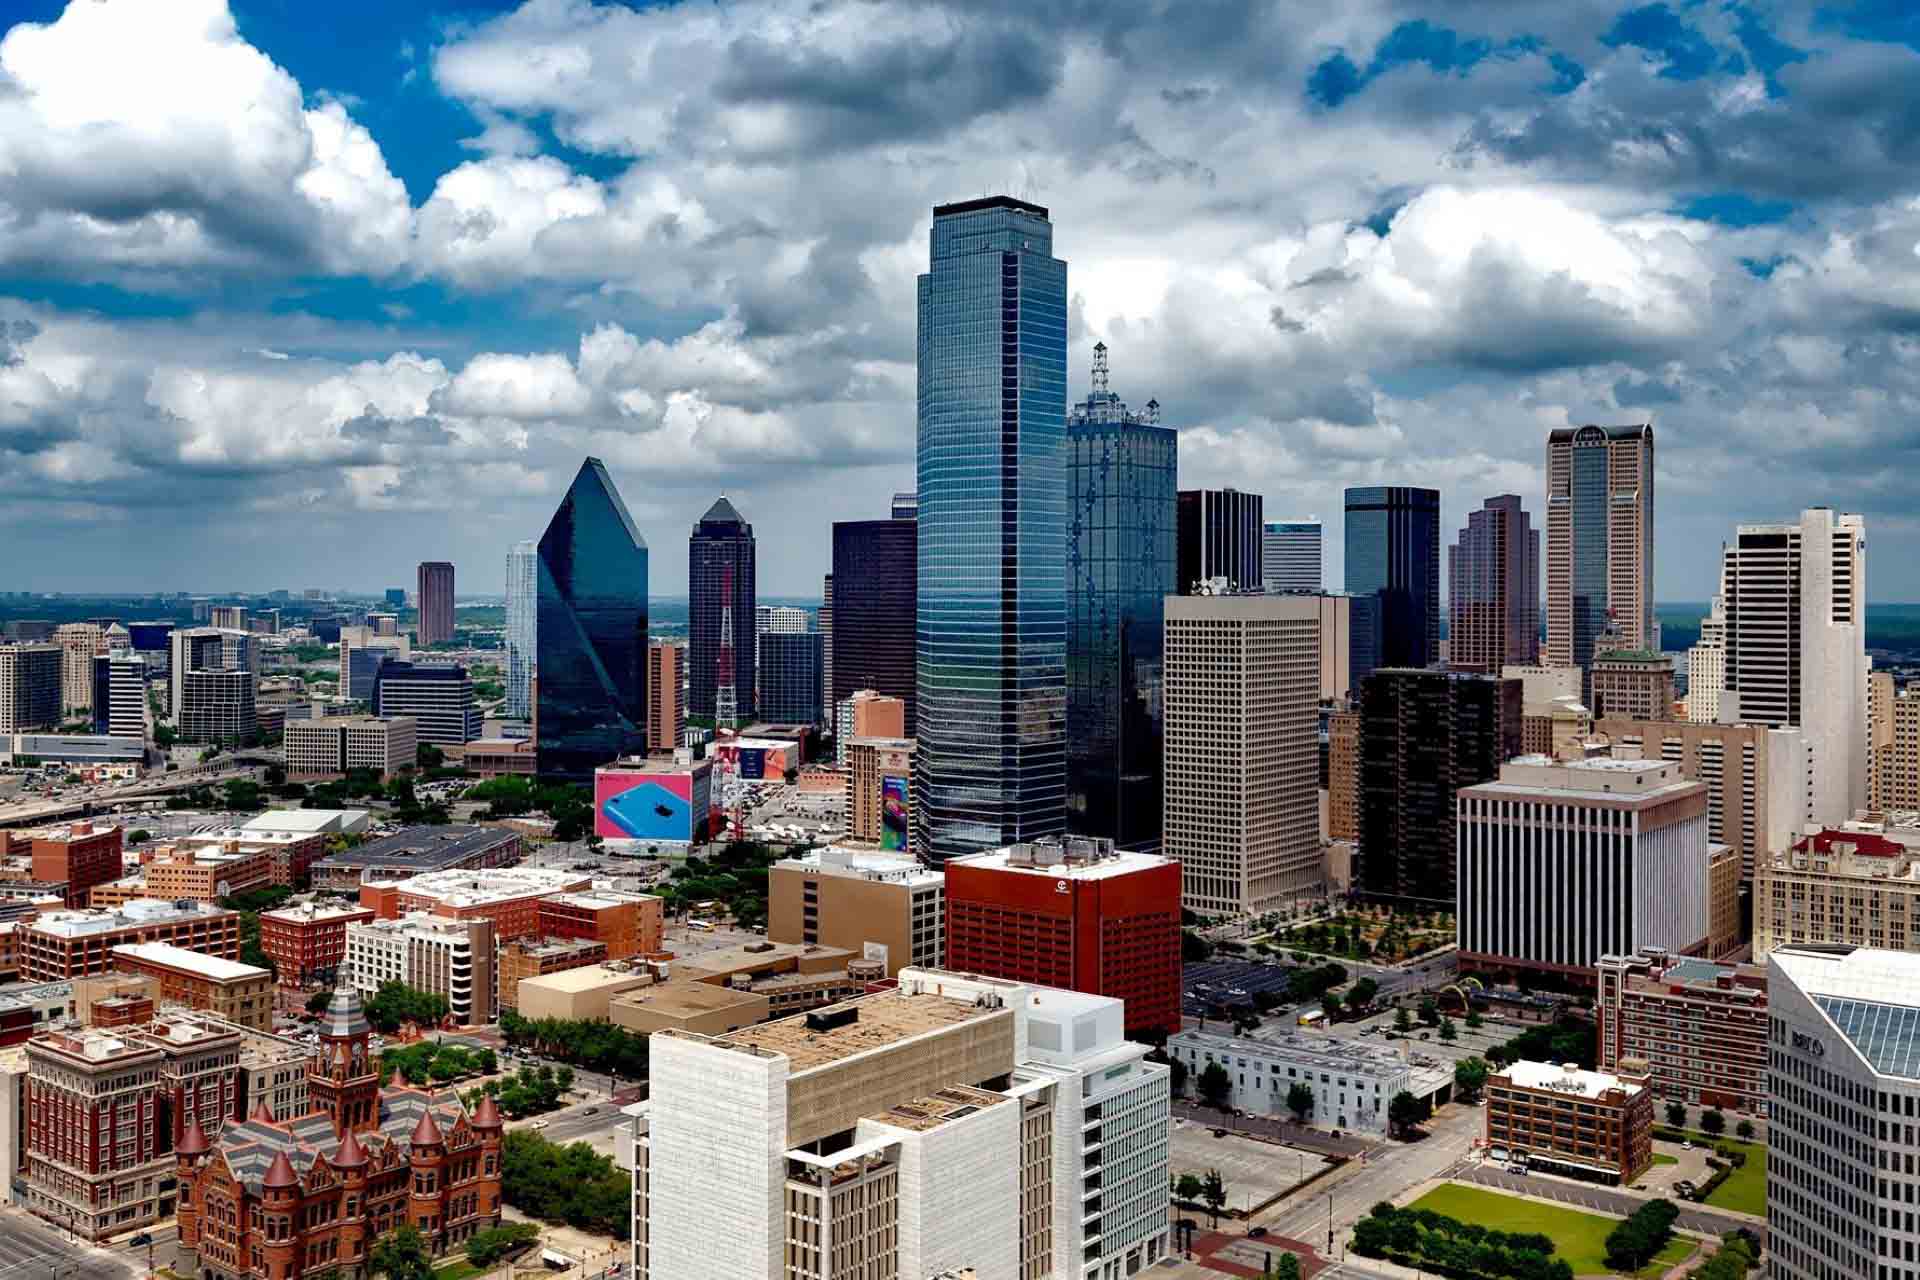 View of the Dallas landscape